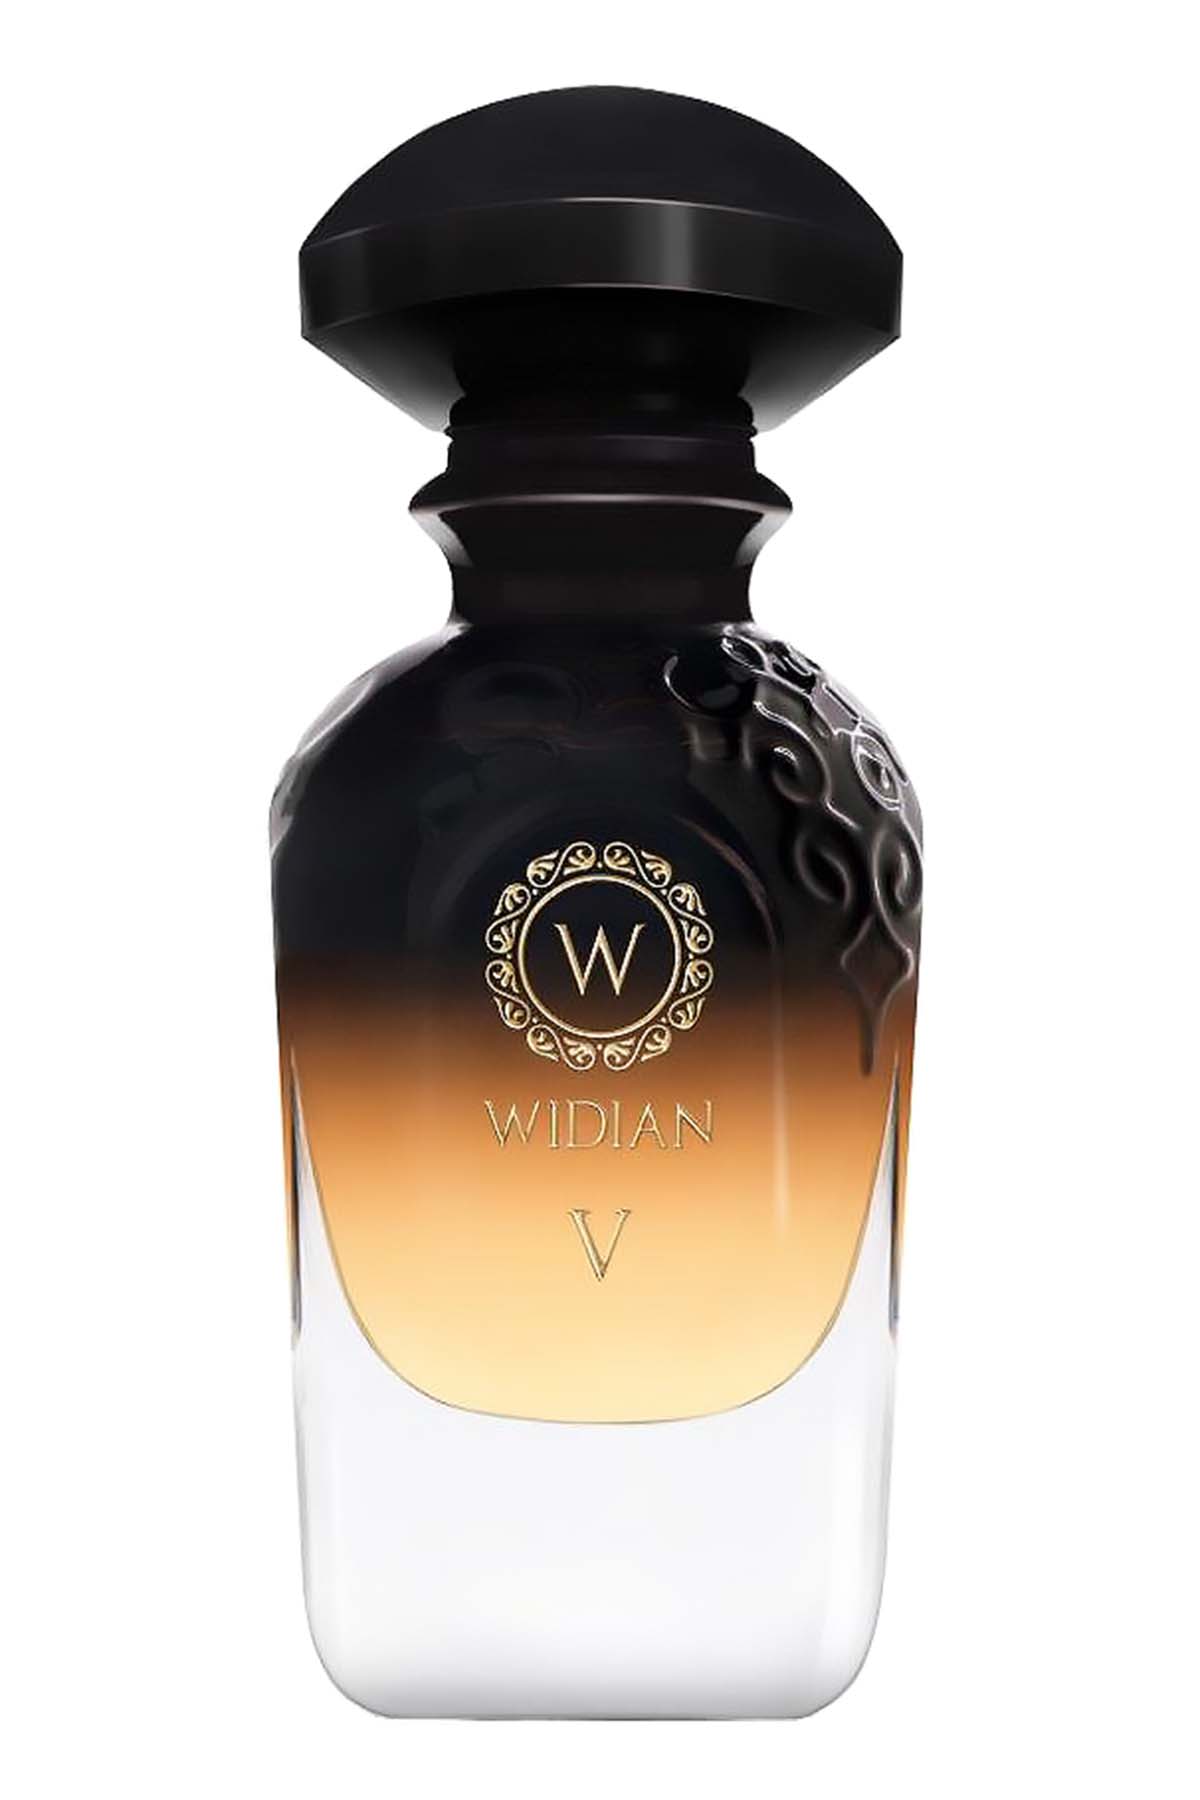 Widian Black V Extrait de Parfum